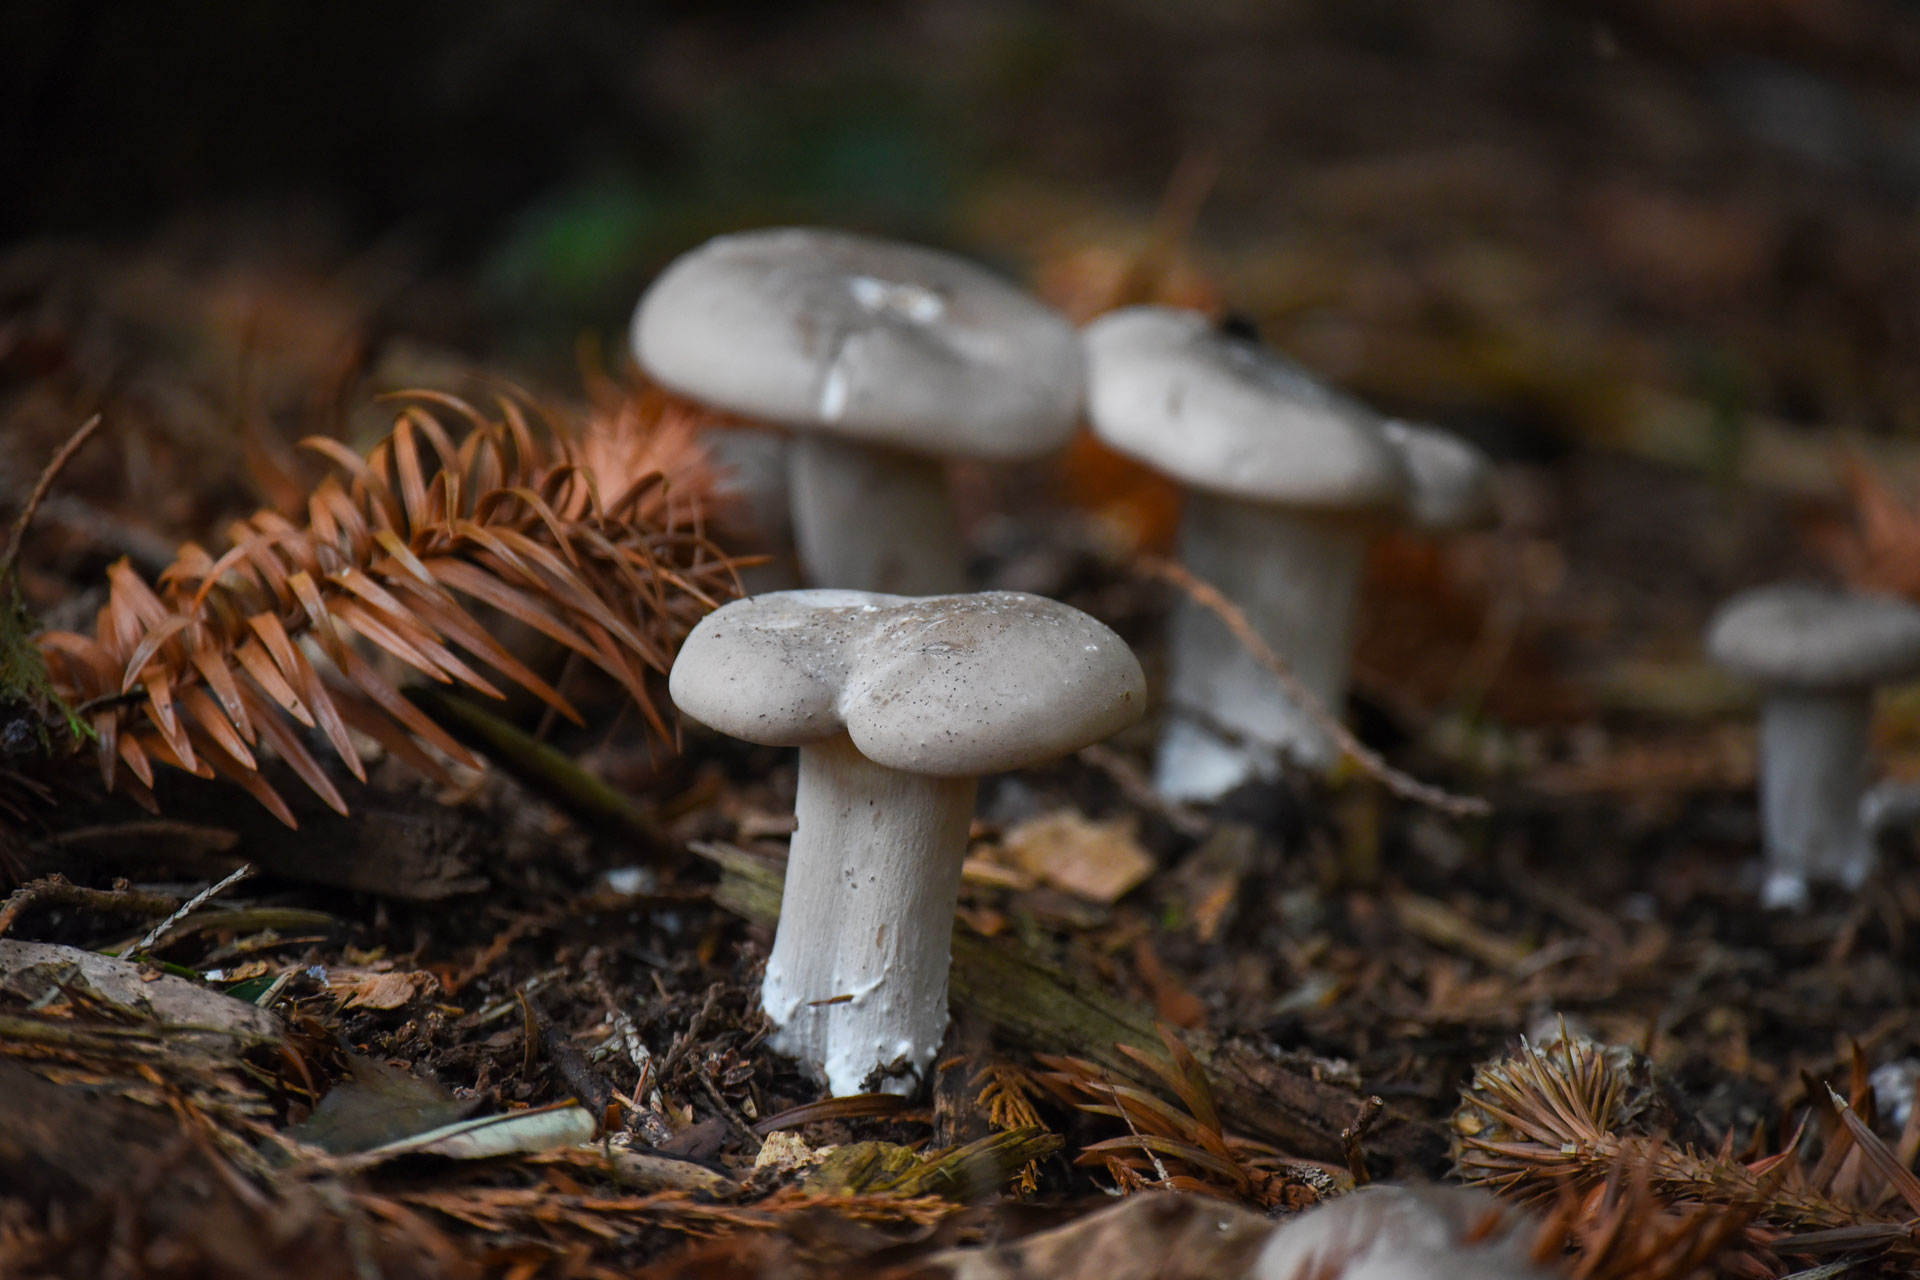 Fungi, mushrooms